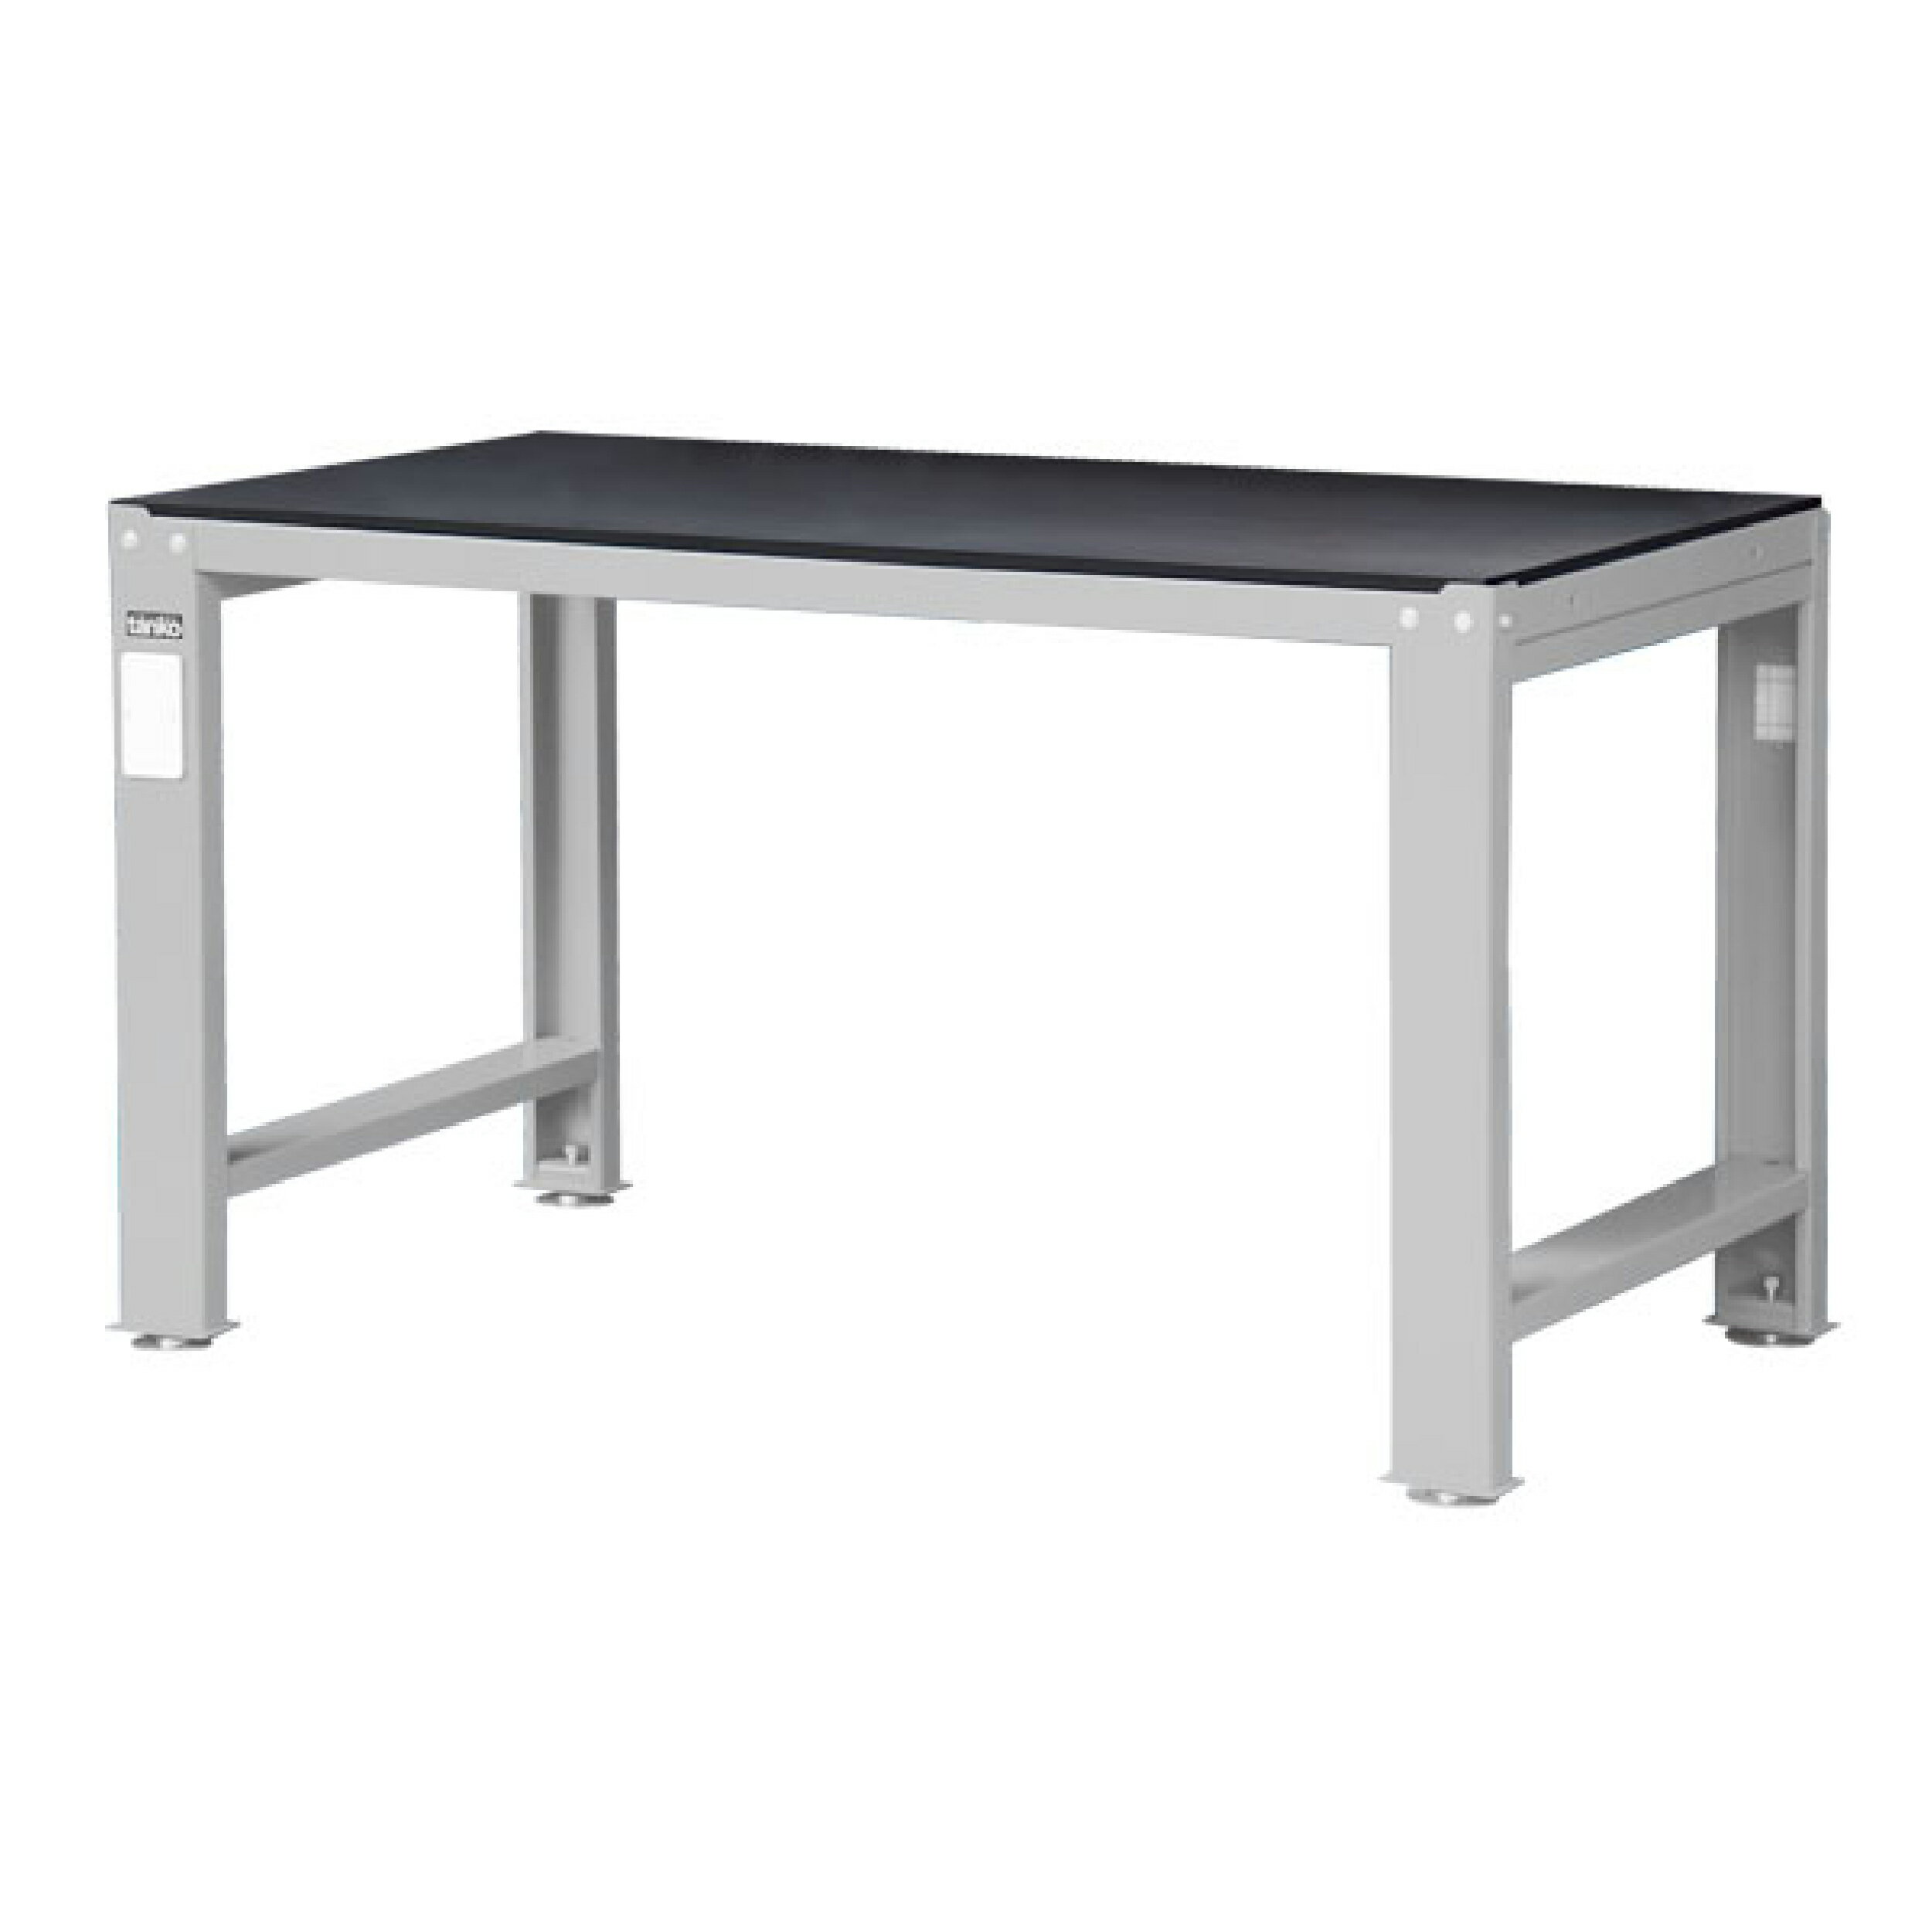 TANKO 重量型工作桌 鋼製工作桌 WD-58P (一般型)